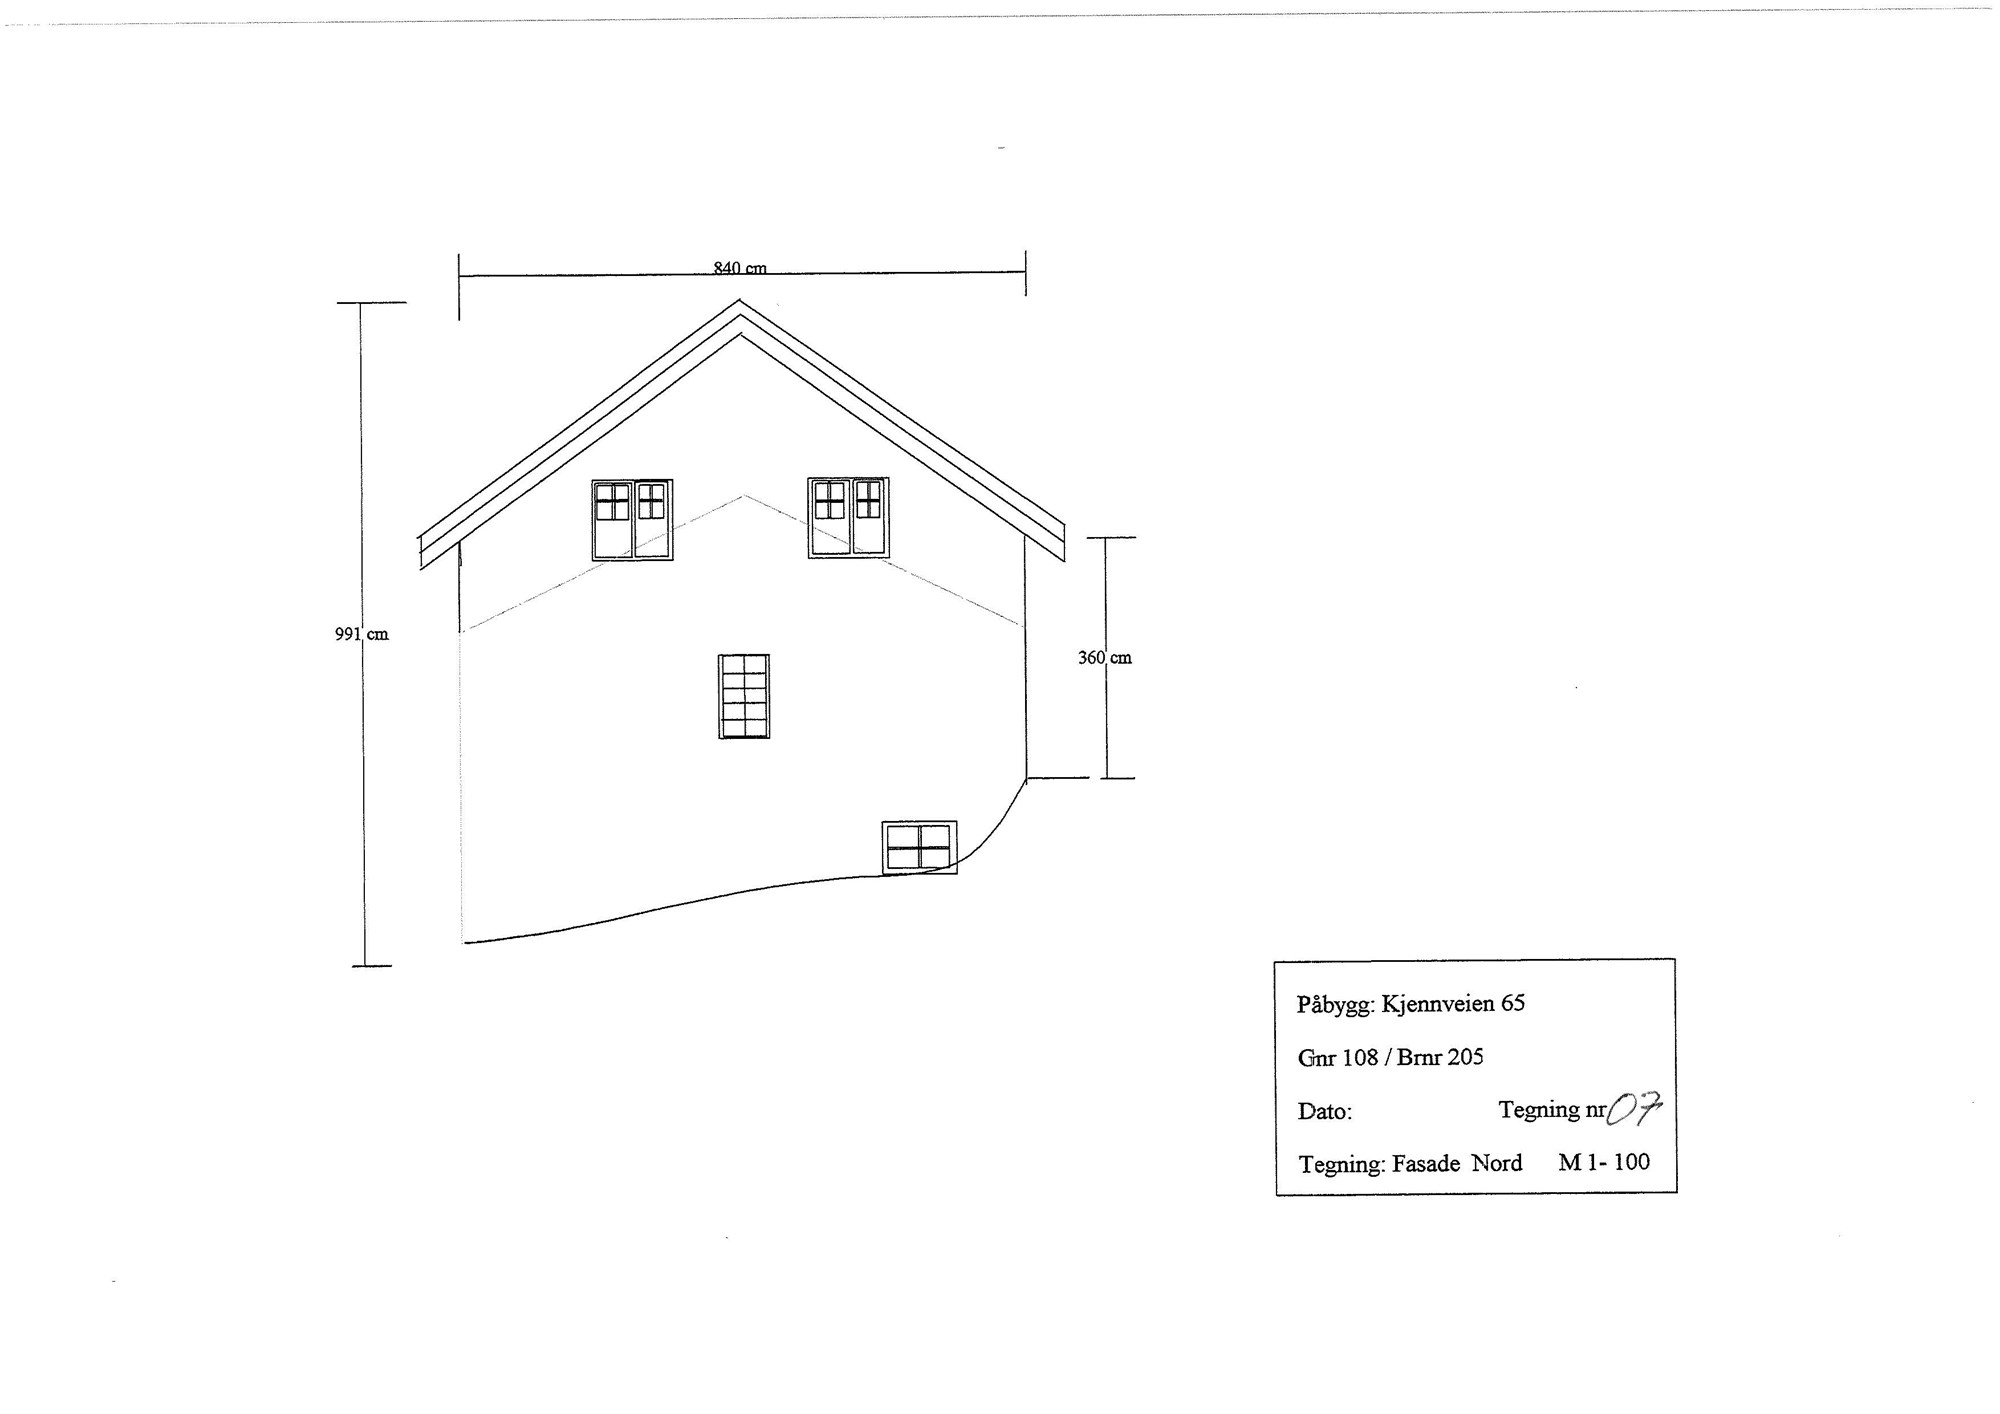 Påbygg  hus på Romerike - tips til utførende firma  - Tegninger_Page_7.jpg - kirkela